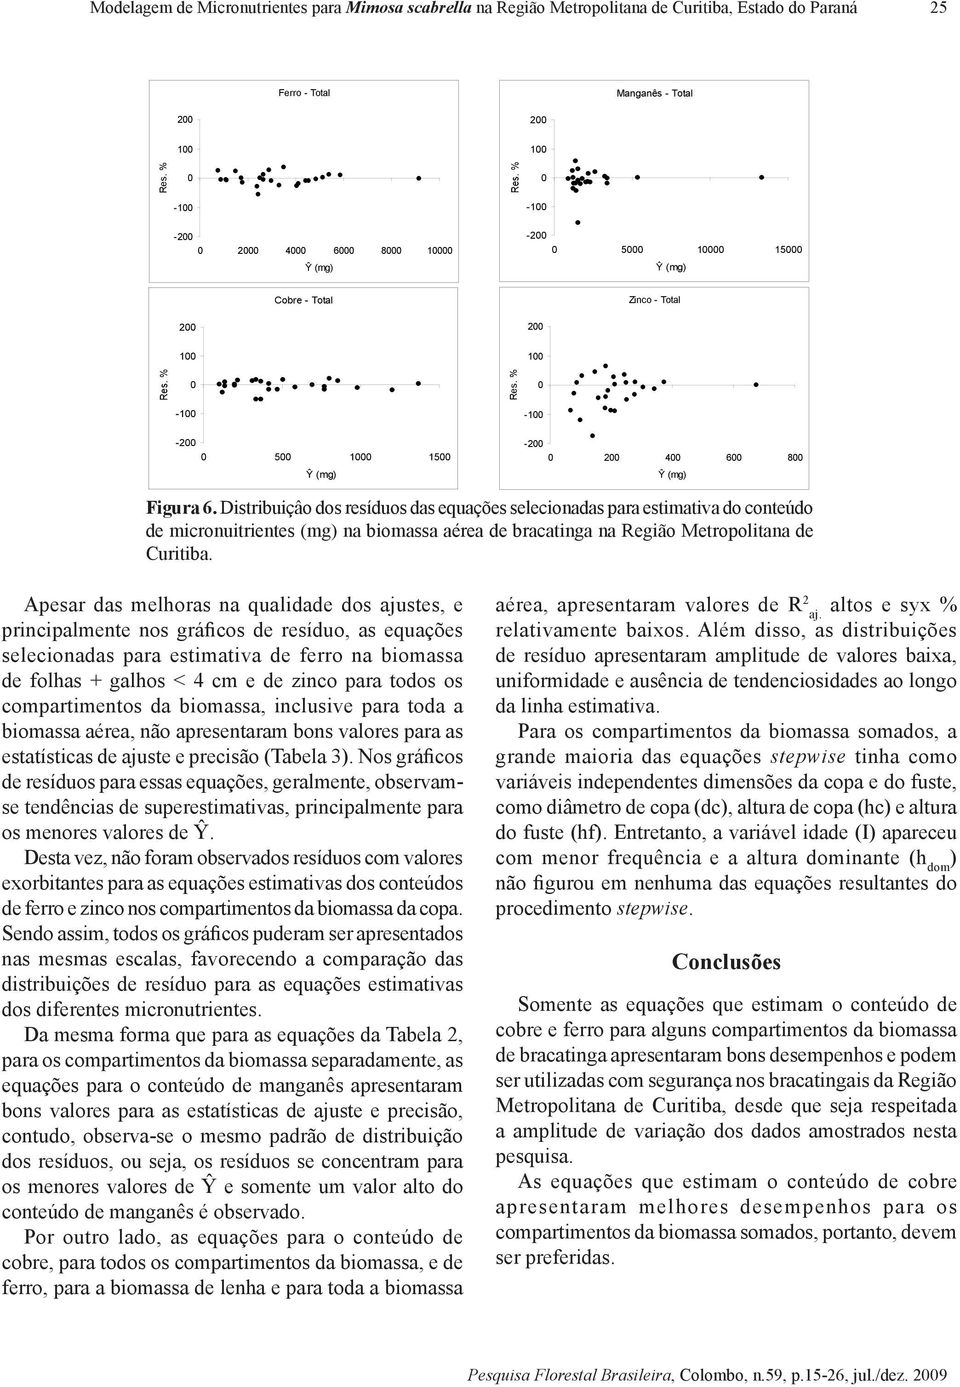 Distribuiçâo dos resíduos das equações selecionadas para estimativa do conteúdo de micronuitrientes (mg) na biomassa aérea de bracatinga na Região Metropolitana de Curitiba.